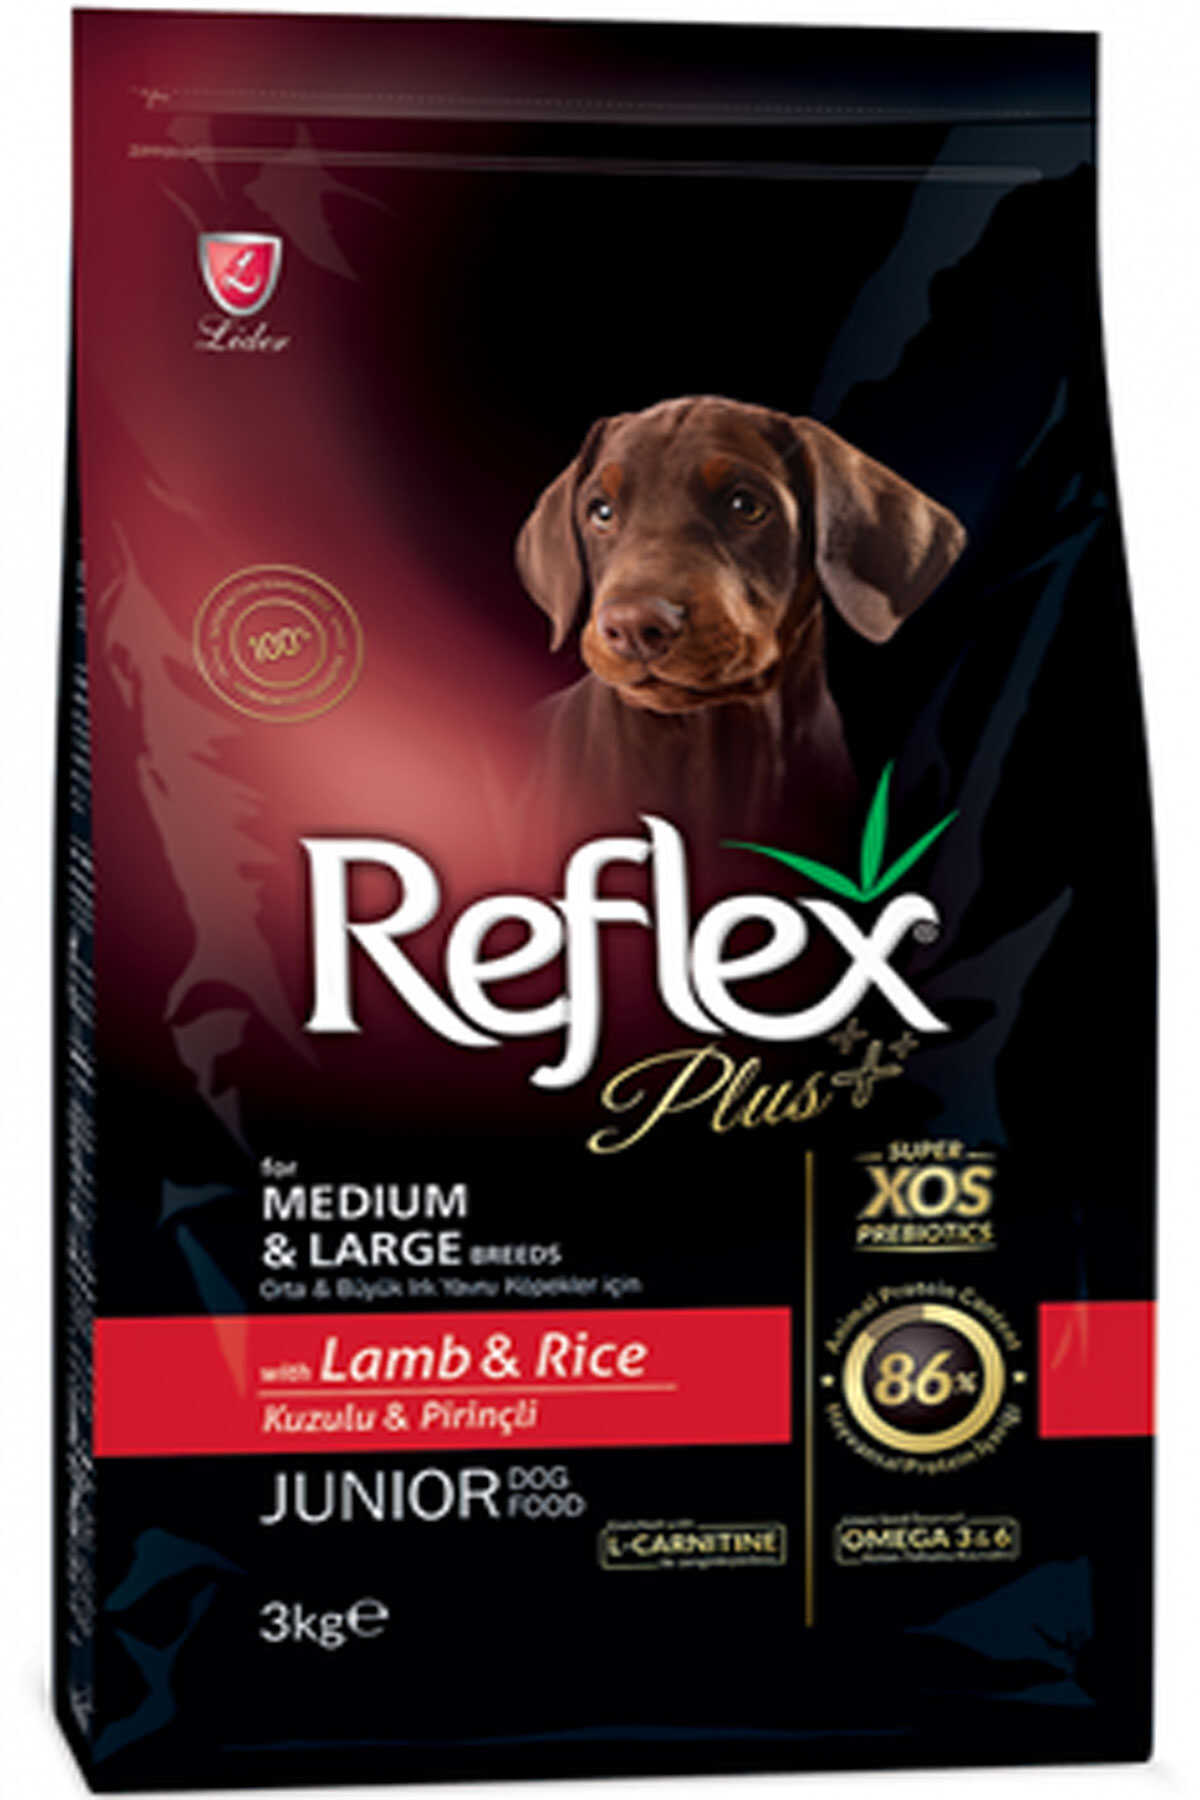 Reflex Plus Kuzu Eti ve Pirinçli Orta ve Büyük Irk Yavru Köpek Maması 3kg